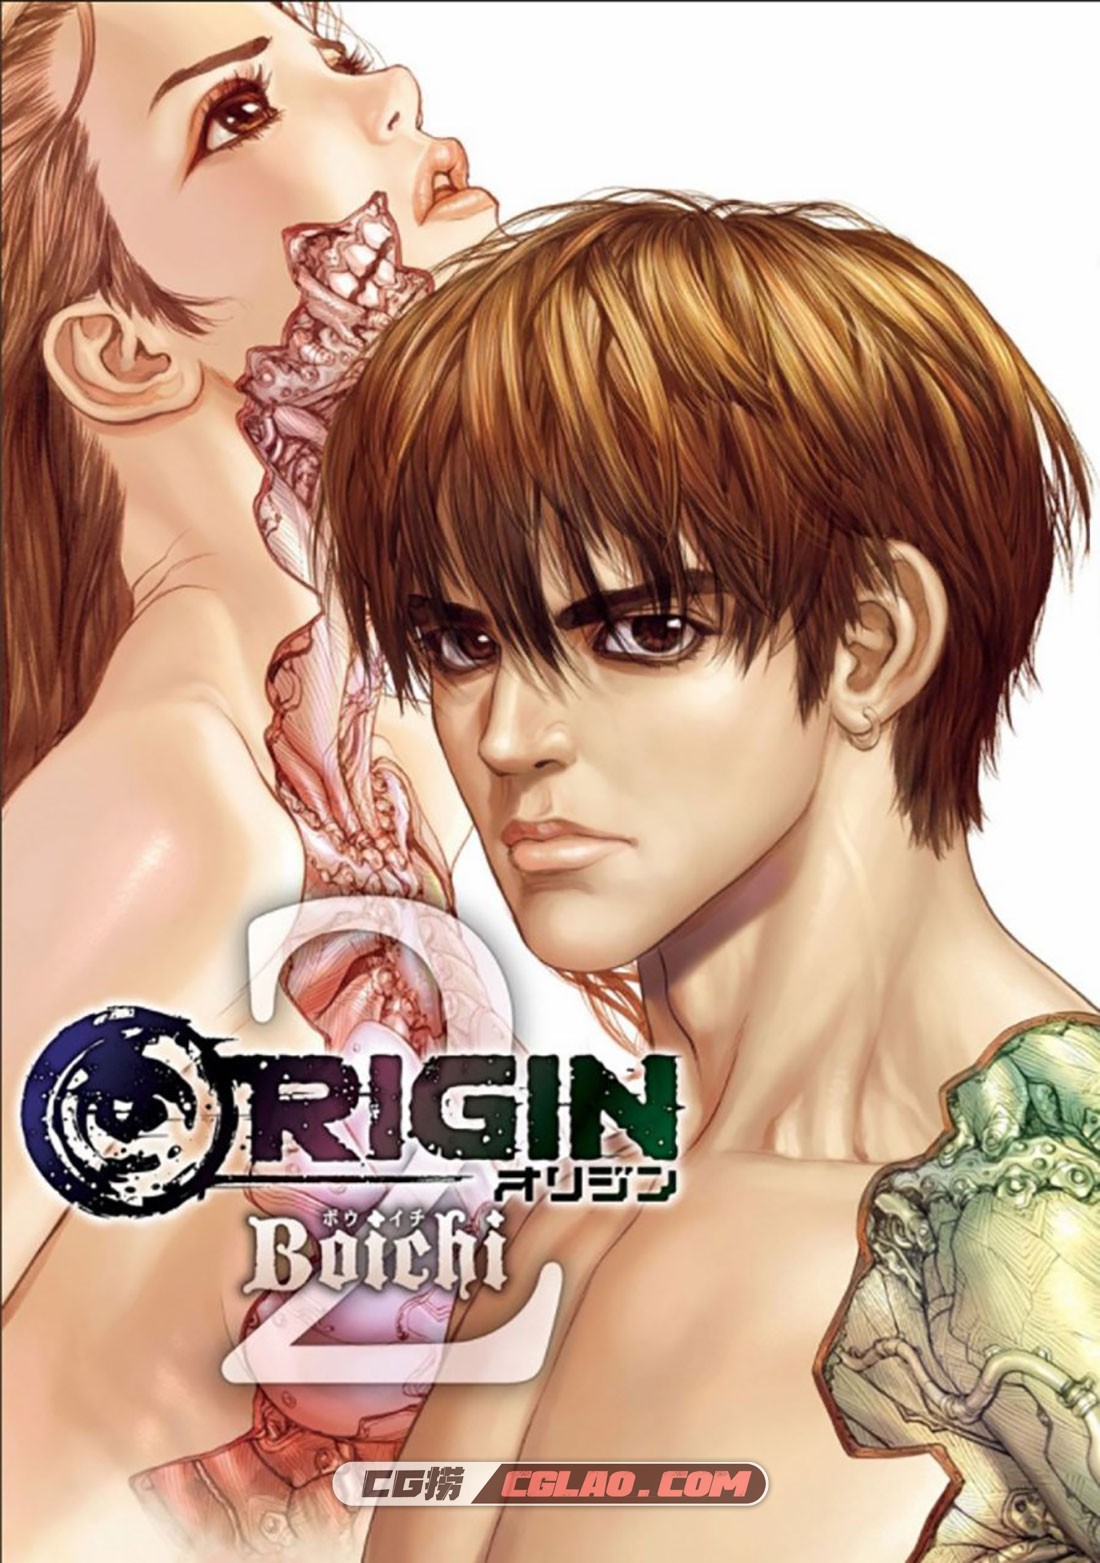 Origin源型机 Boichi 1-10卷全集完结 附外传特别篇 网盘下载,第07话_0001.jpg